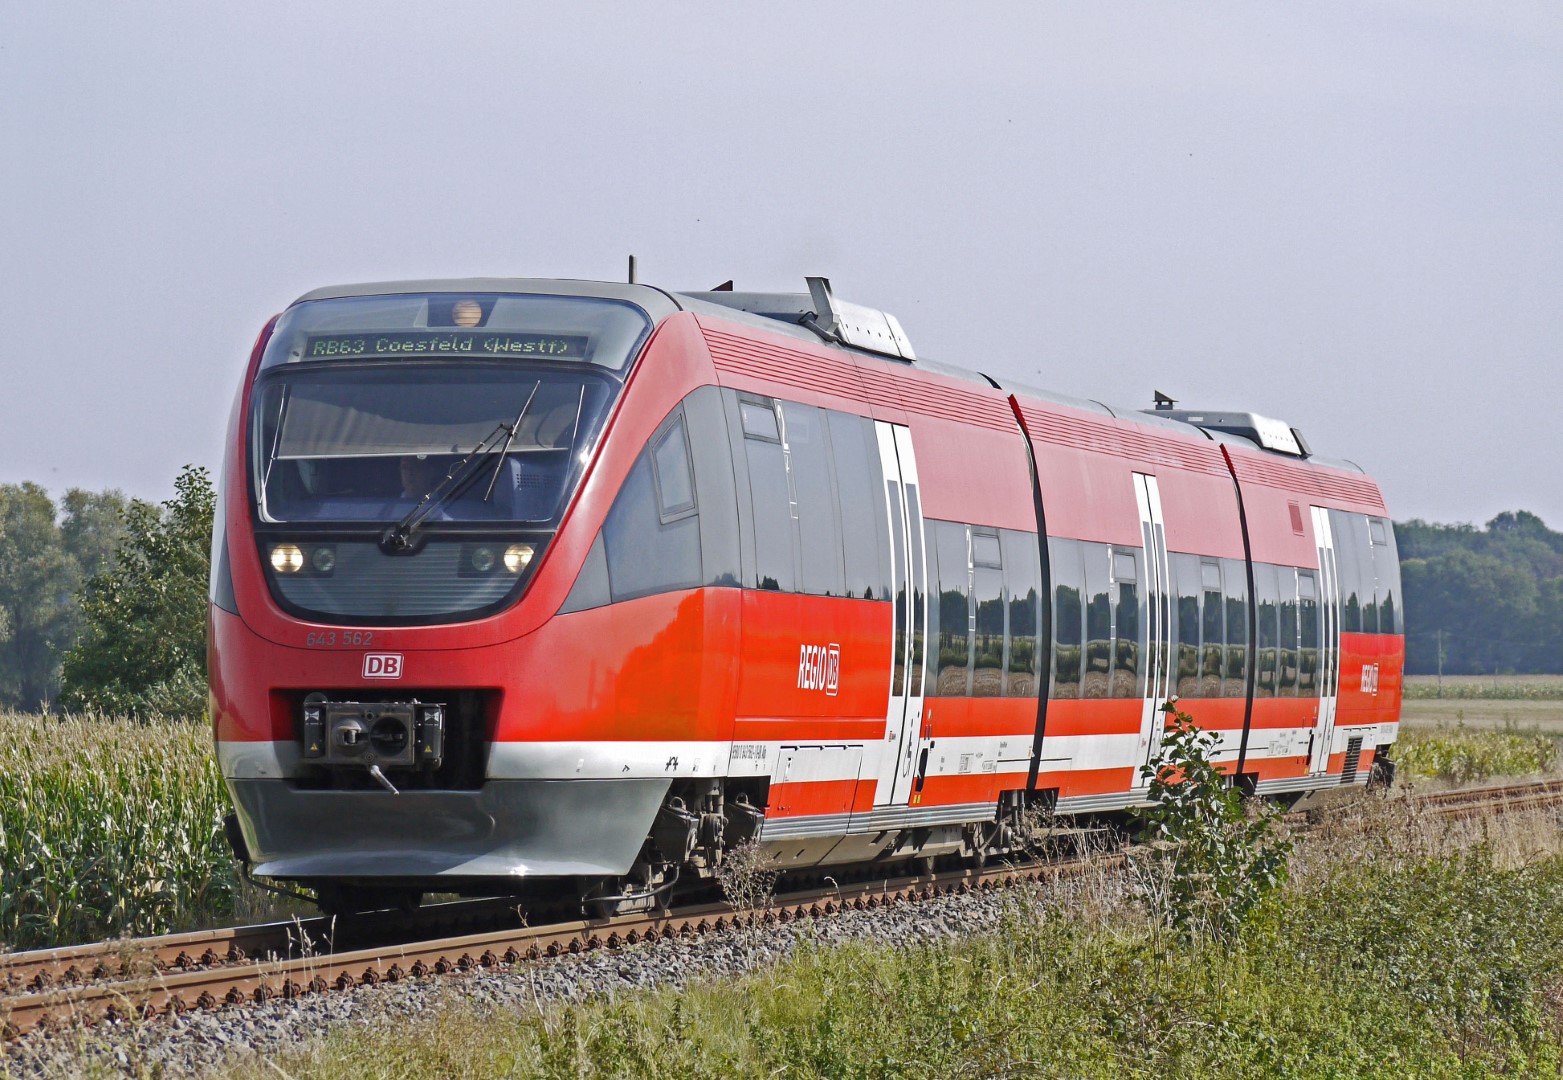 bavaria train trip